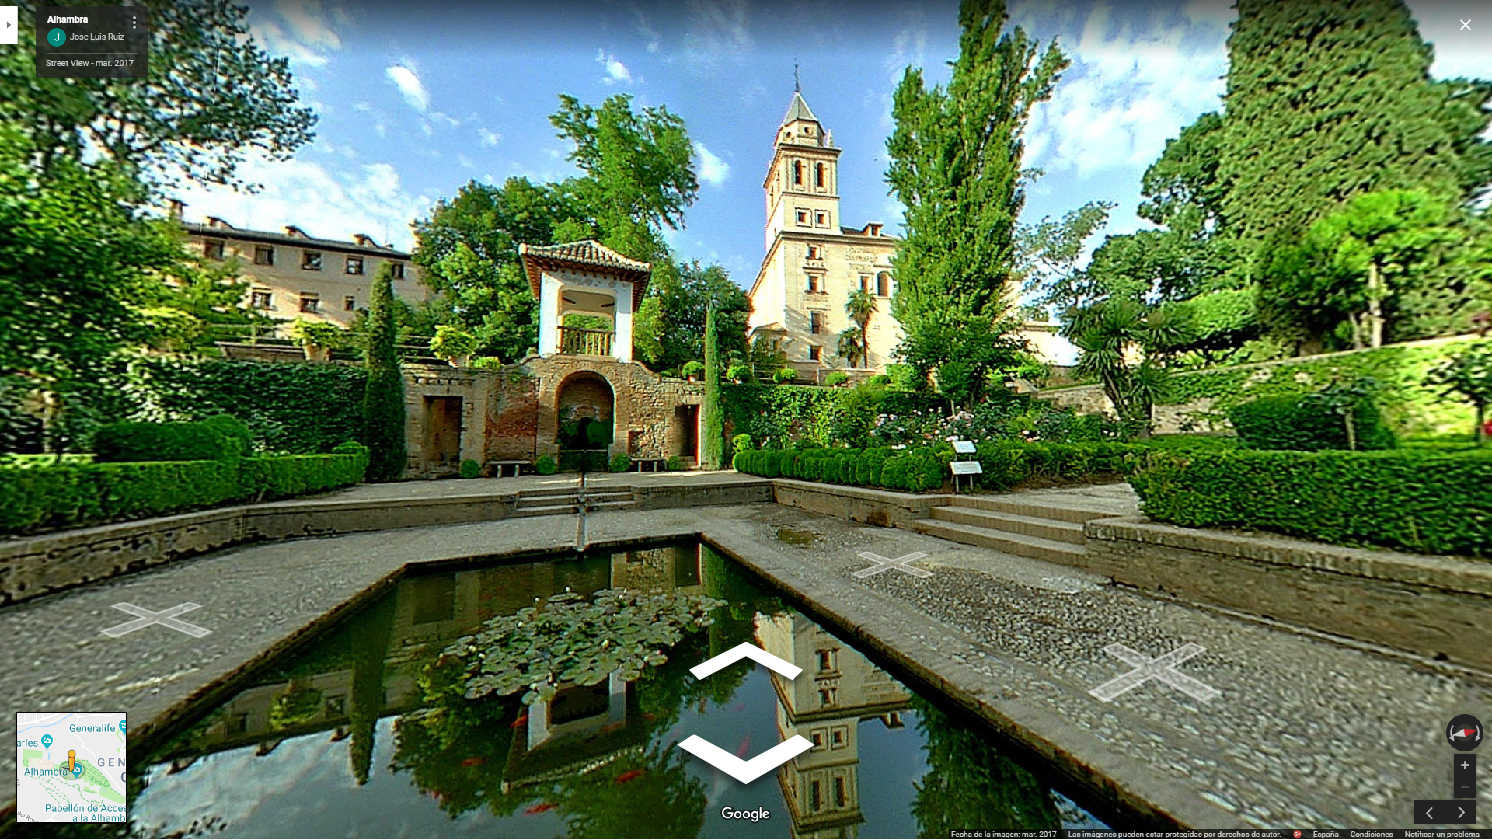 Sube tus tours a Google Street View